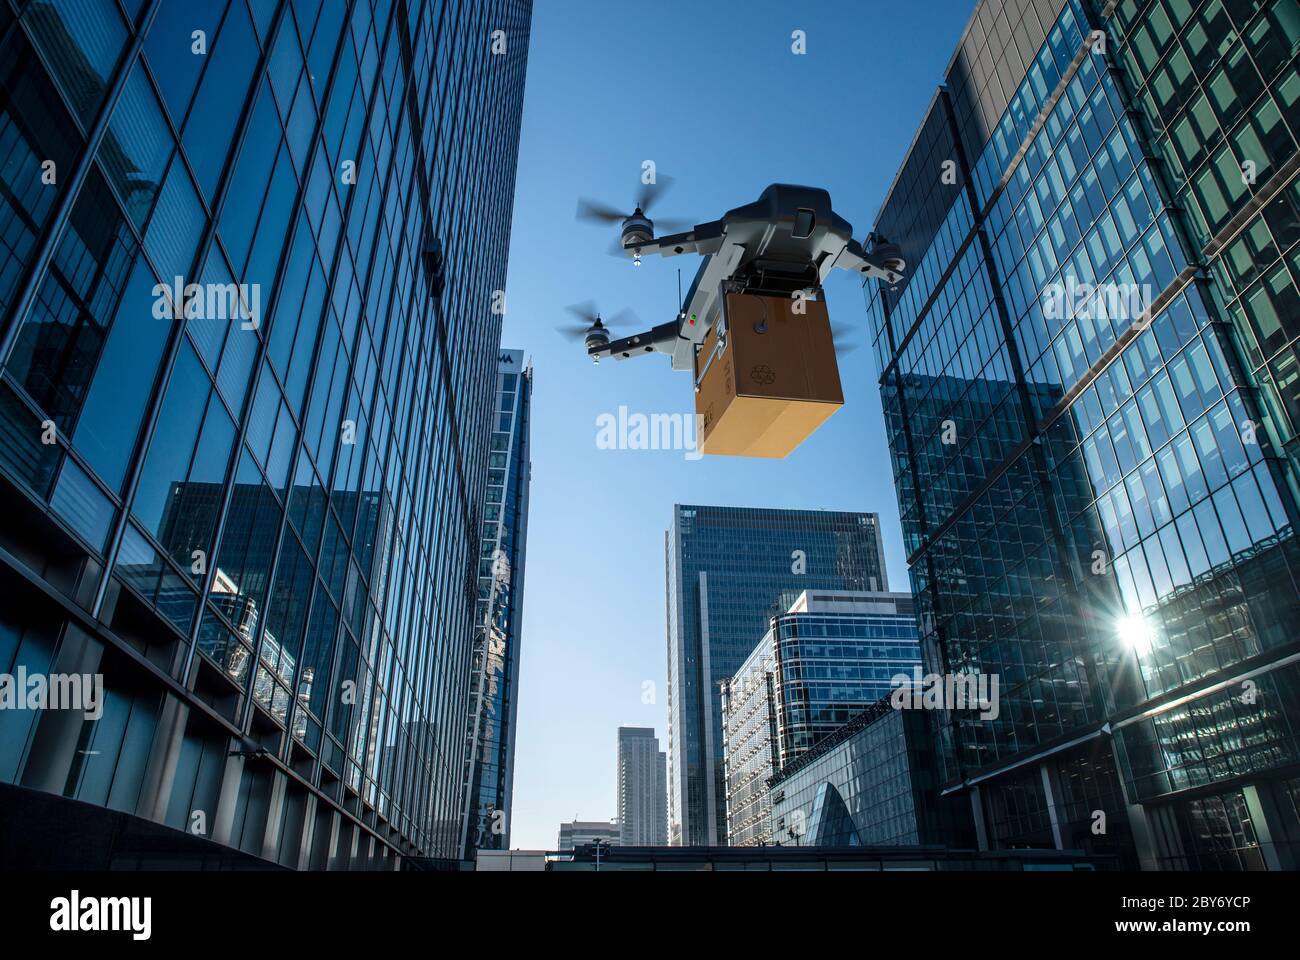 Livraison de colis par drone entre les immeubles de haute élévation, Londres, Royaume-Uni Banque D'Images